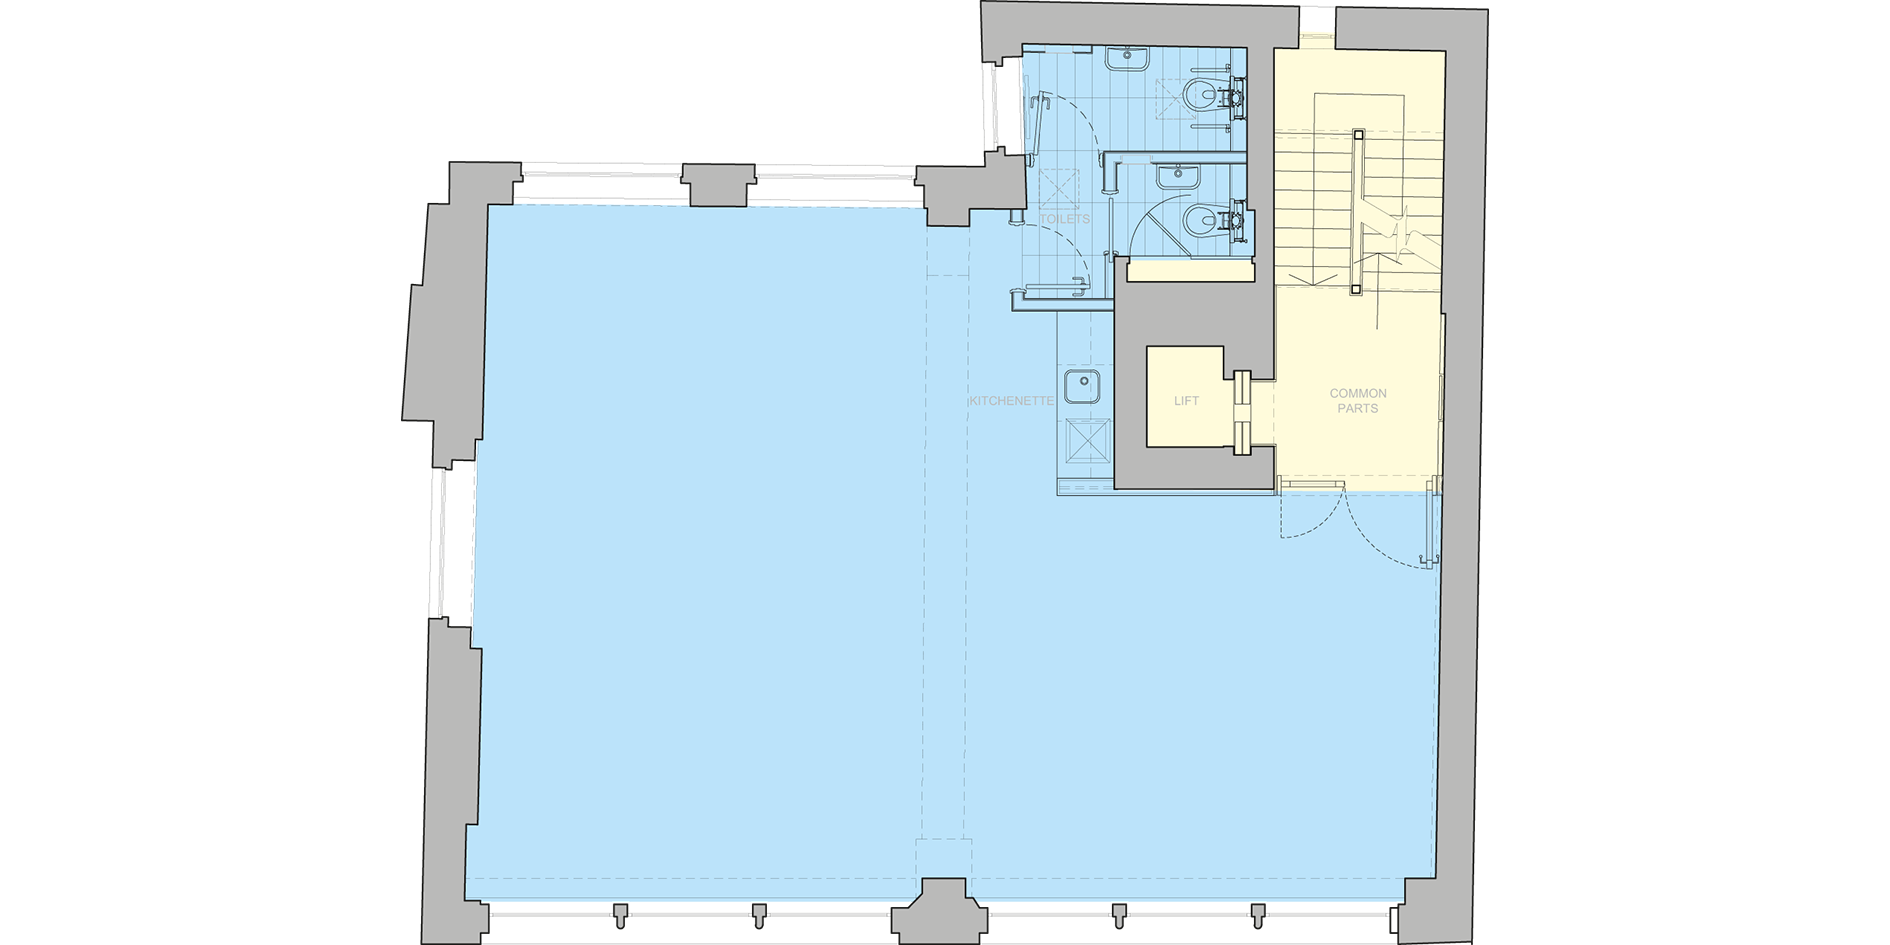 Second floor floorplan